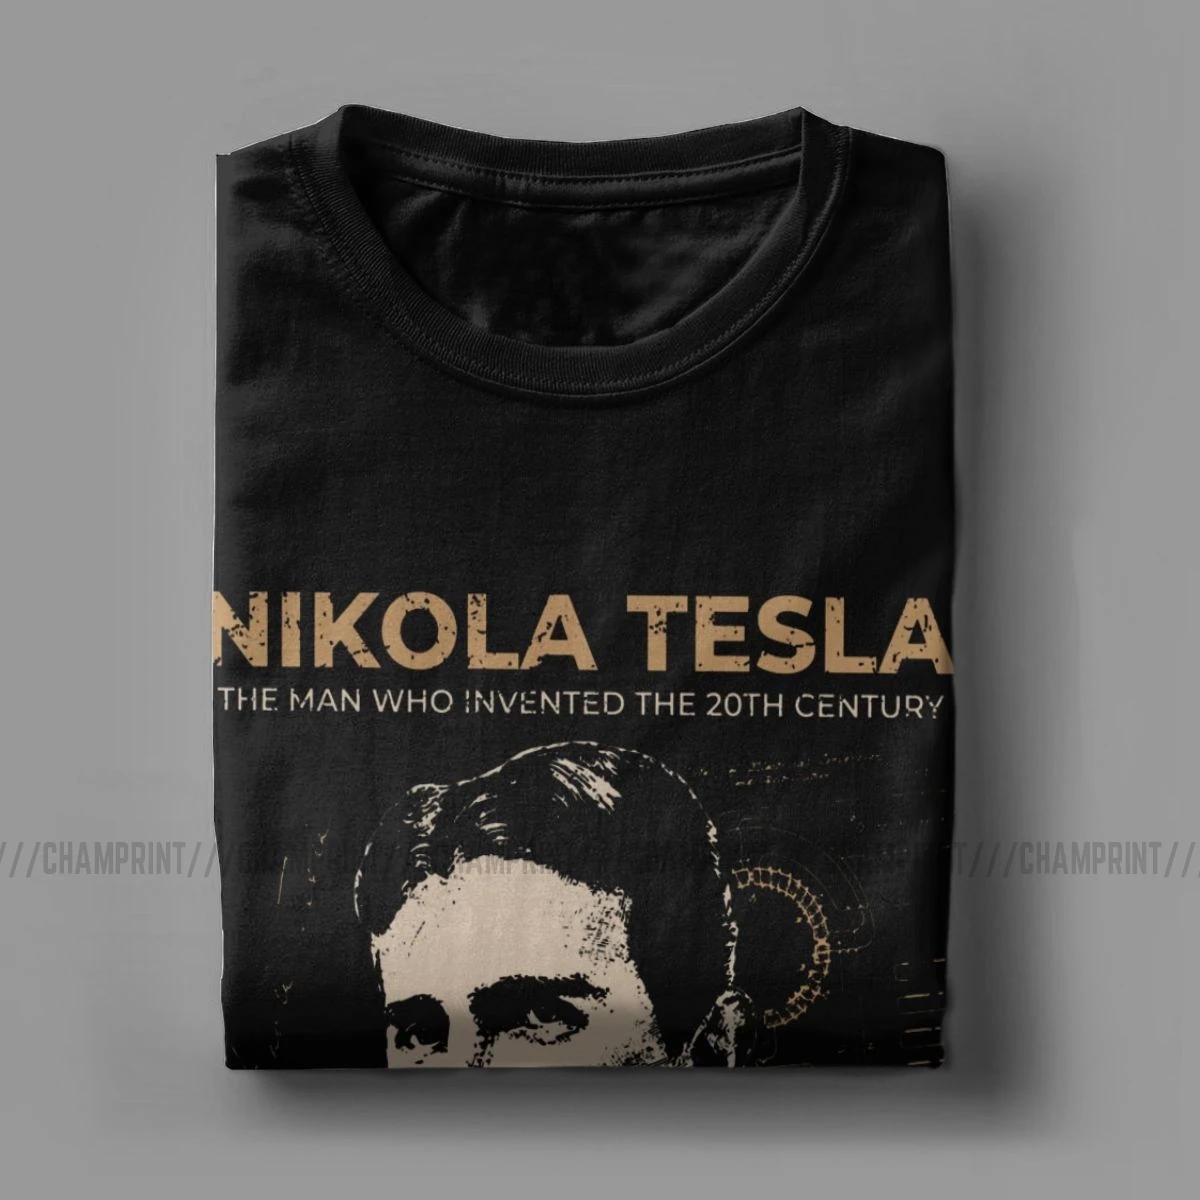 Мужские футболки Nikola Tesla с коротким рукавом изобретателем физики научные 100%